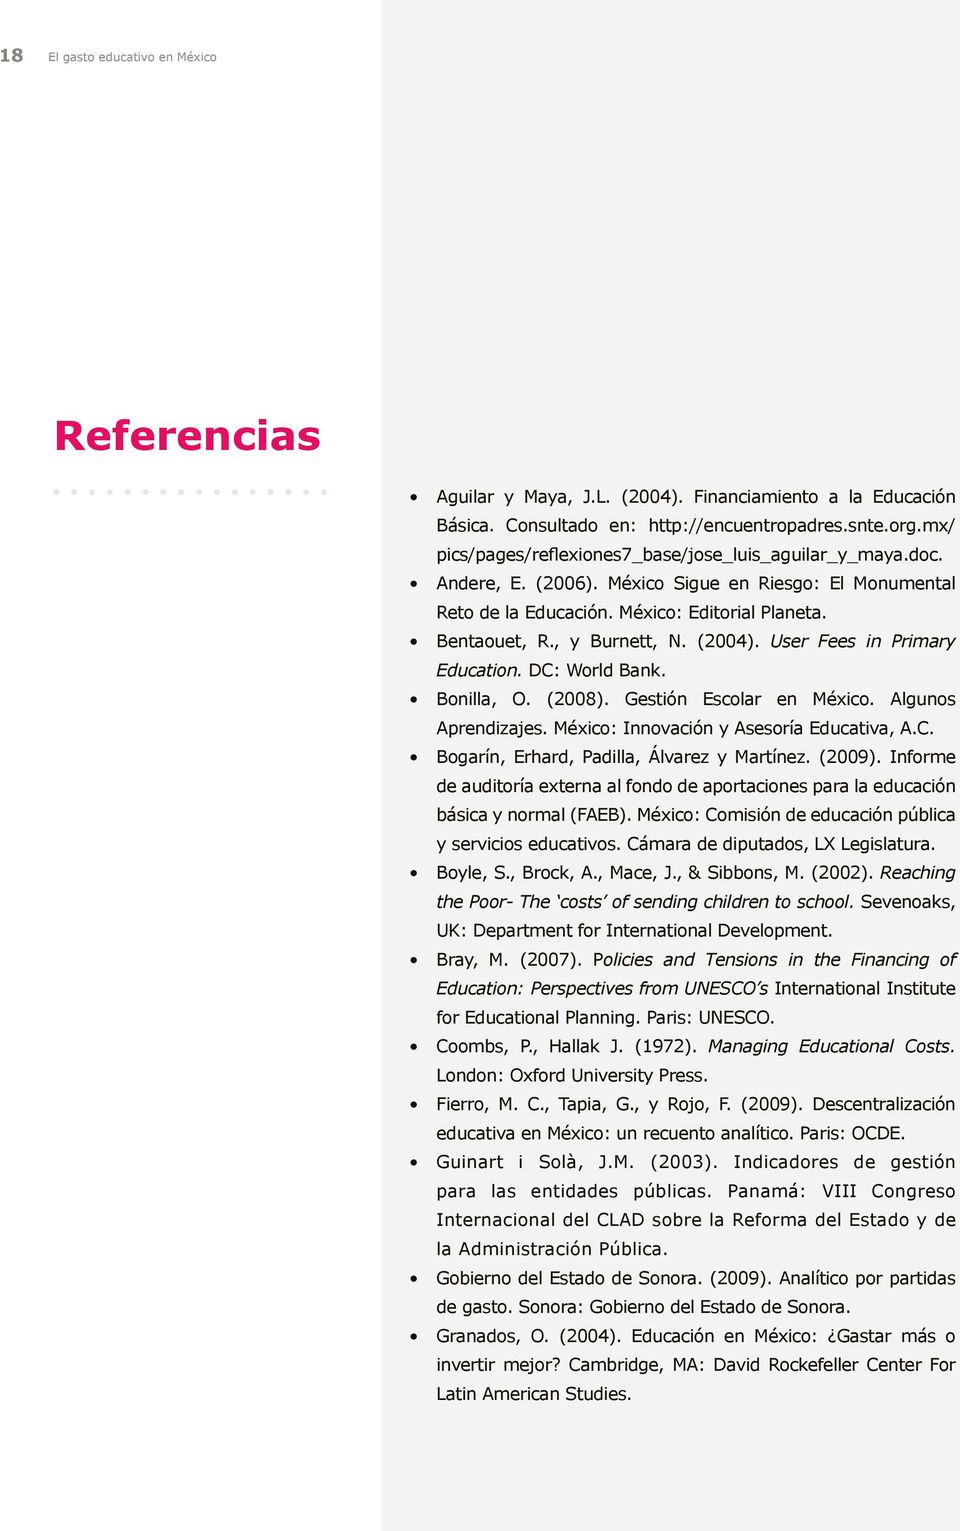 (2004). User Fees in Primary Education. DC: World Bank. Bonilla, O. (2008). Gestión Escolar en México. Algunos Aprendizajes. México: Innovación y Asesoría Educativa, A.C. Bogarín, Erhard, Padilla, Álvarez y Martínez.